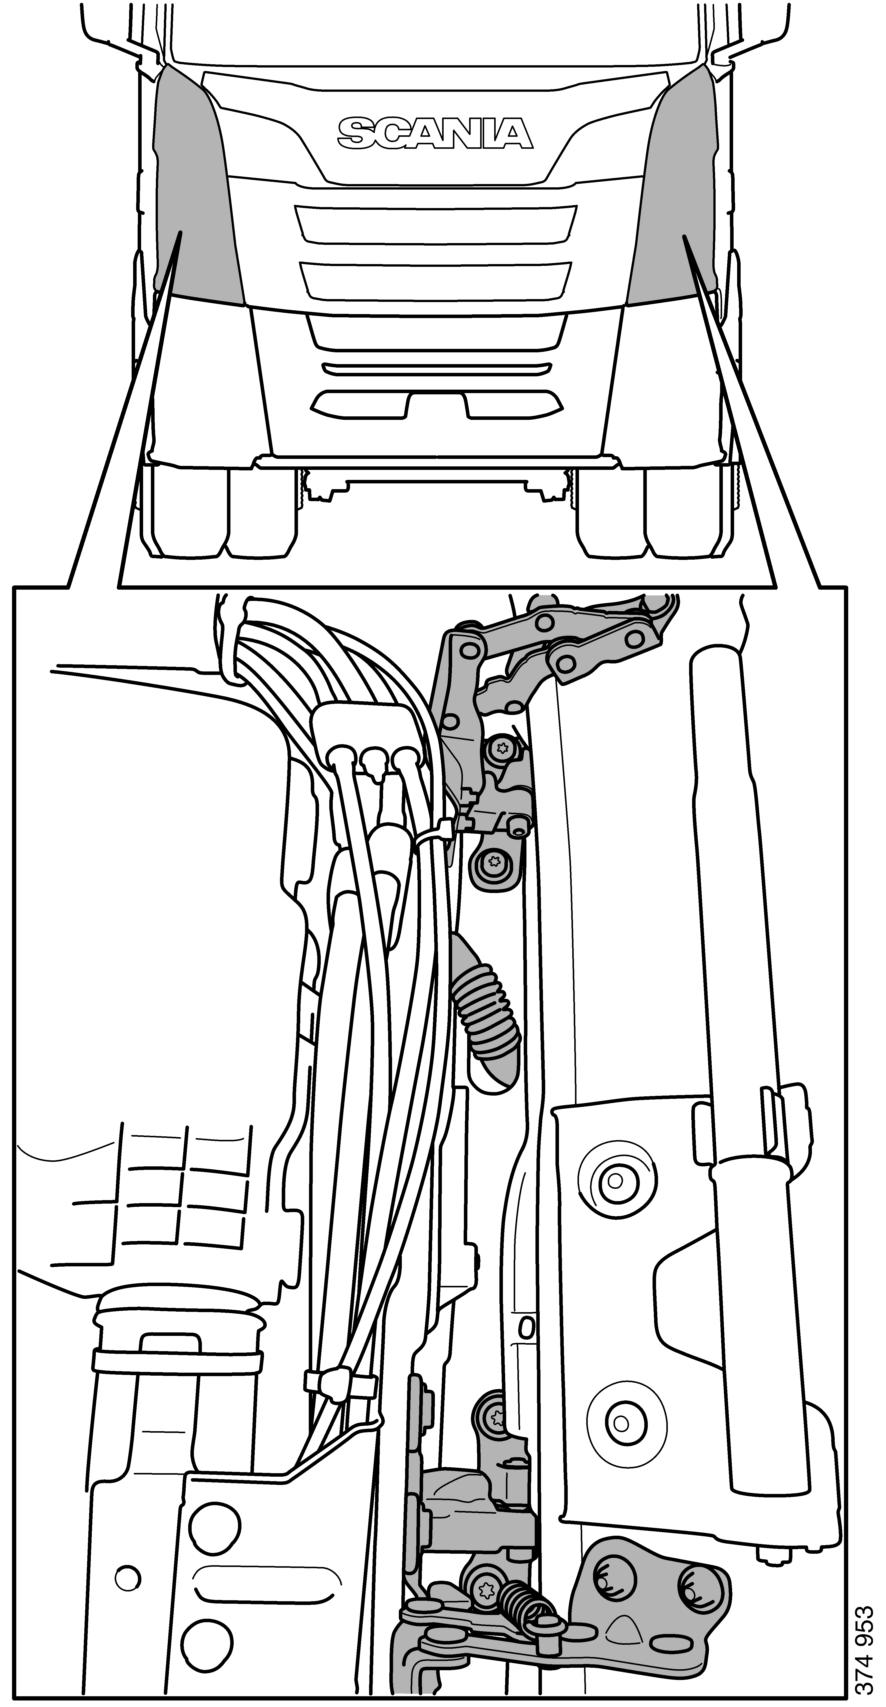 Vniknutí do vozidla Vniknutí do vozidla Dveře Dveře mohou být demontovány z kabiny pomocí přeříznutí závěsů.